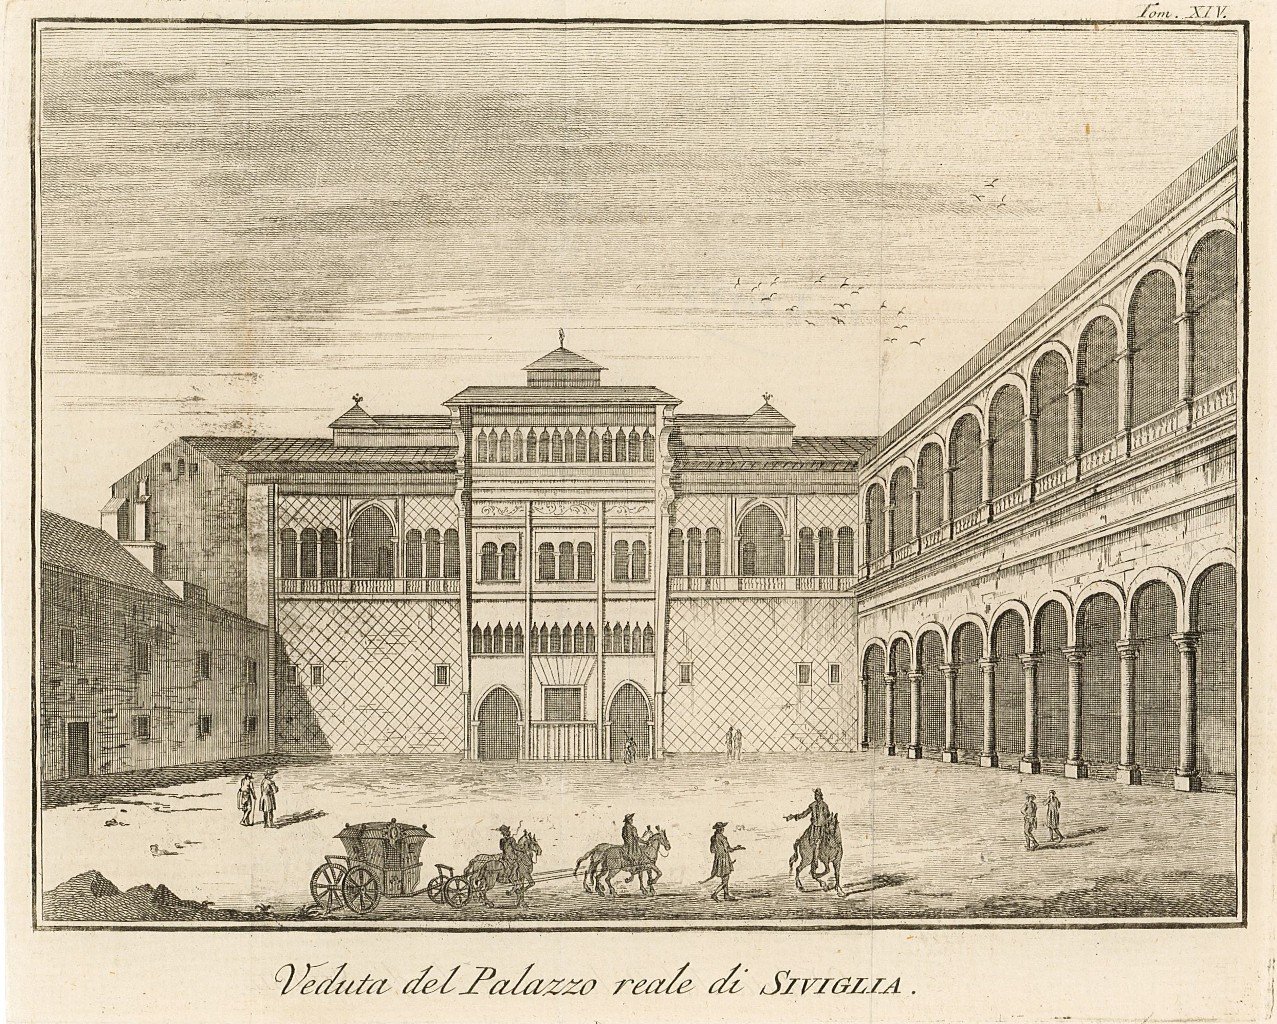 Veduta del Palazzo reale di Siviglia